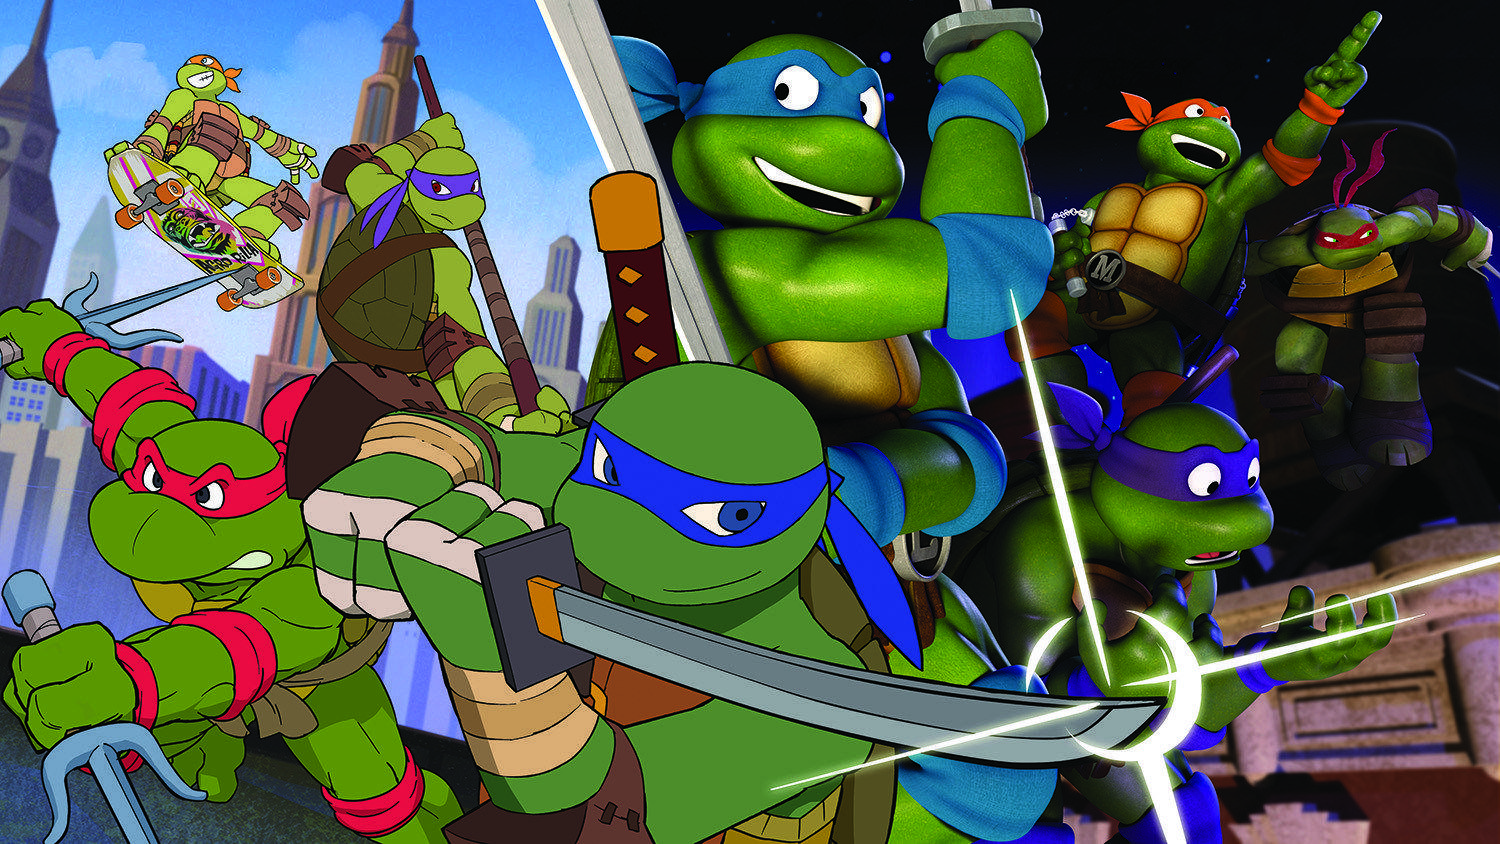 1980s Teenage Mutant Ninja Turtles Wallpapers Top Free 1980s Teenage Mutant Ninja Turtles 